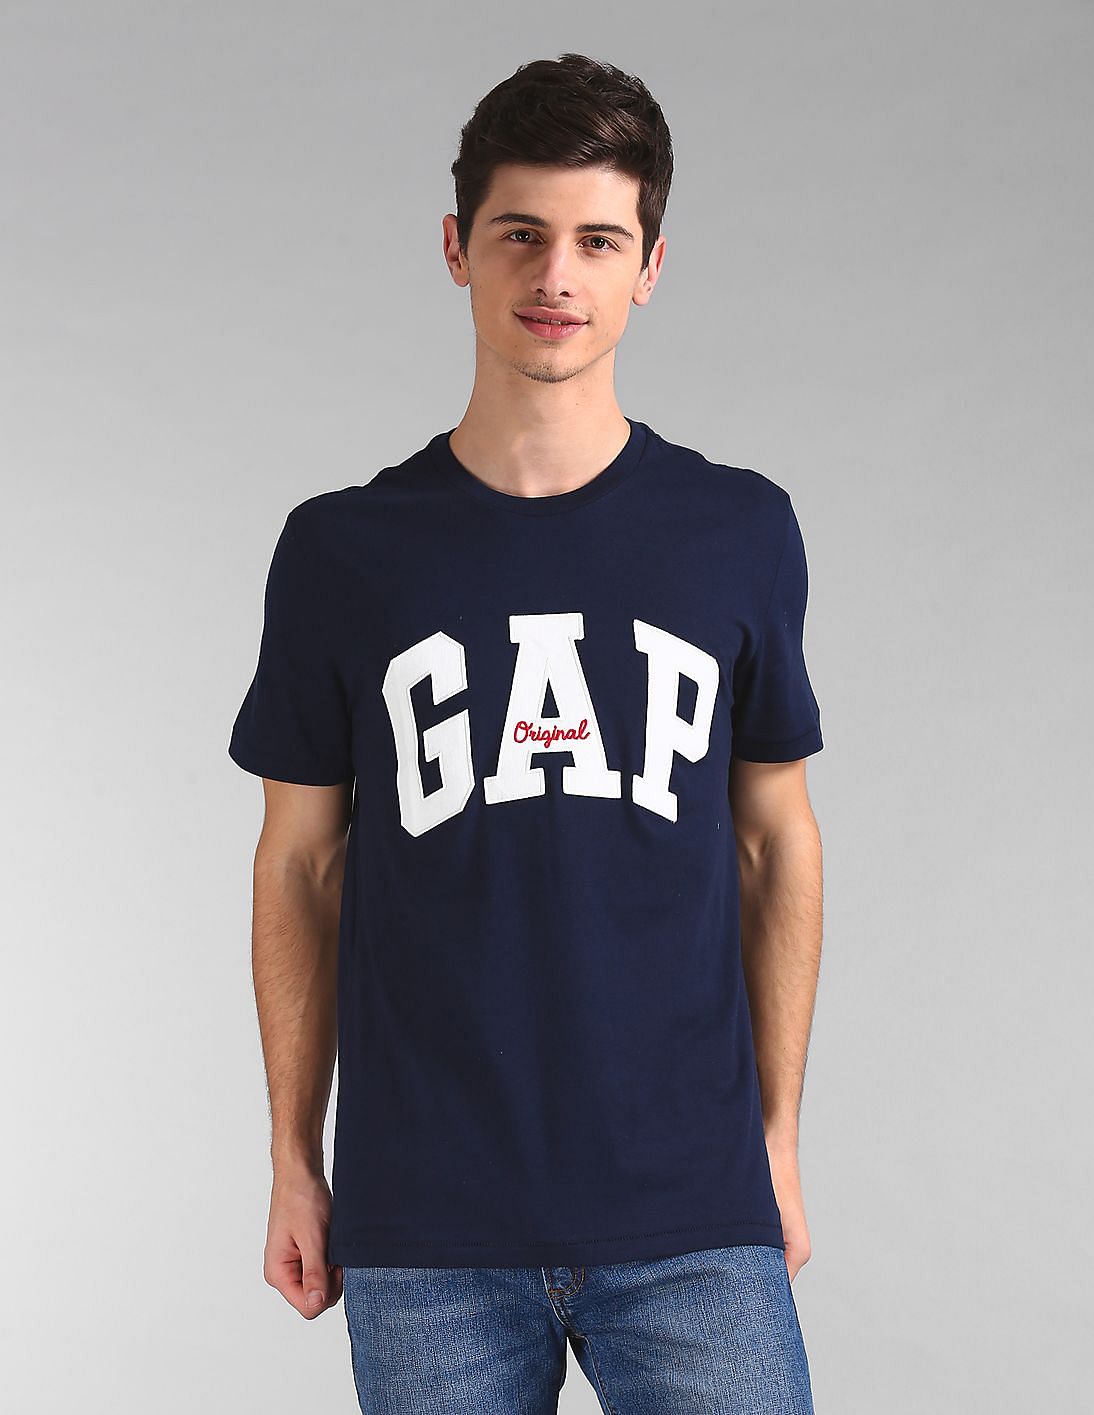 gap blue shirt